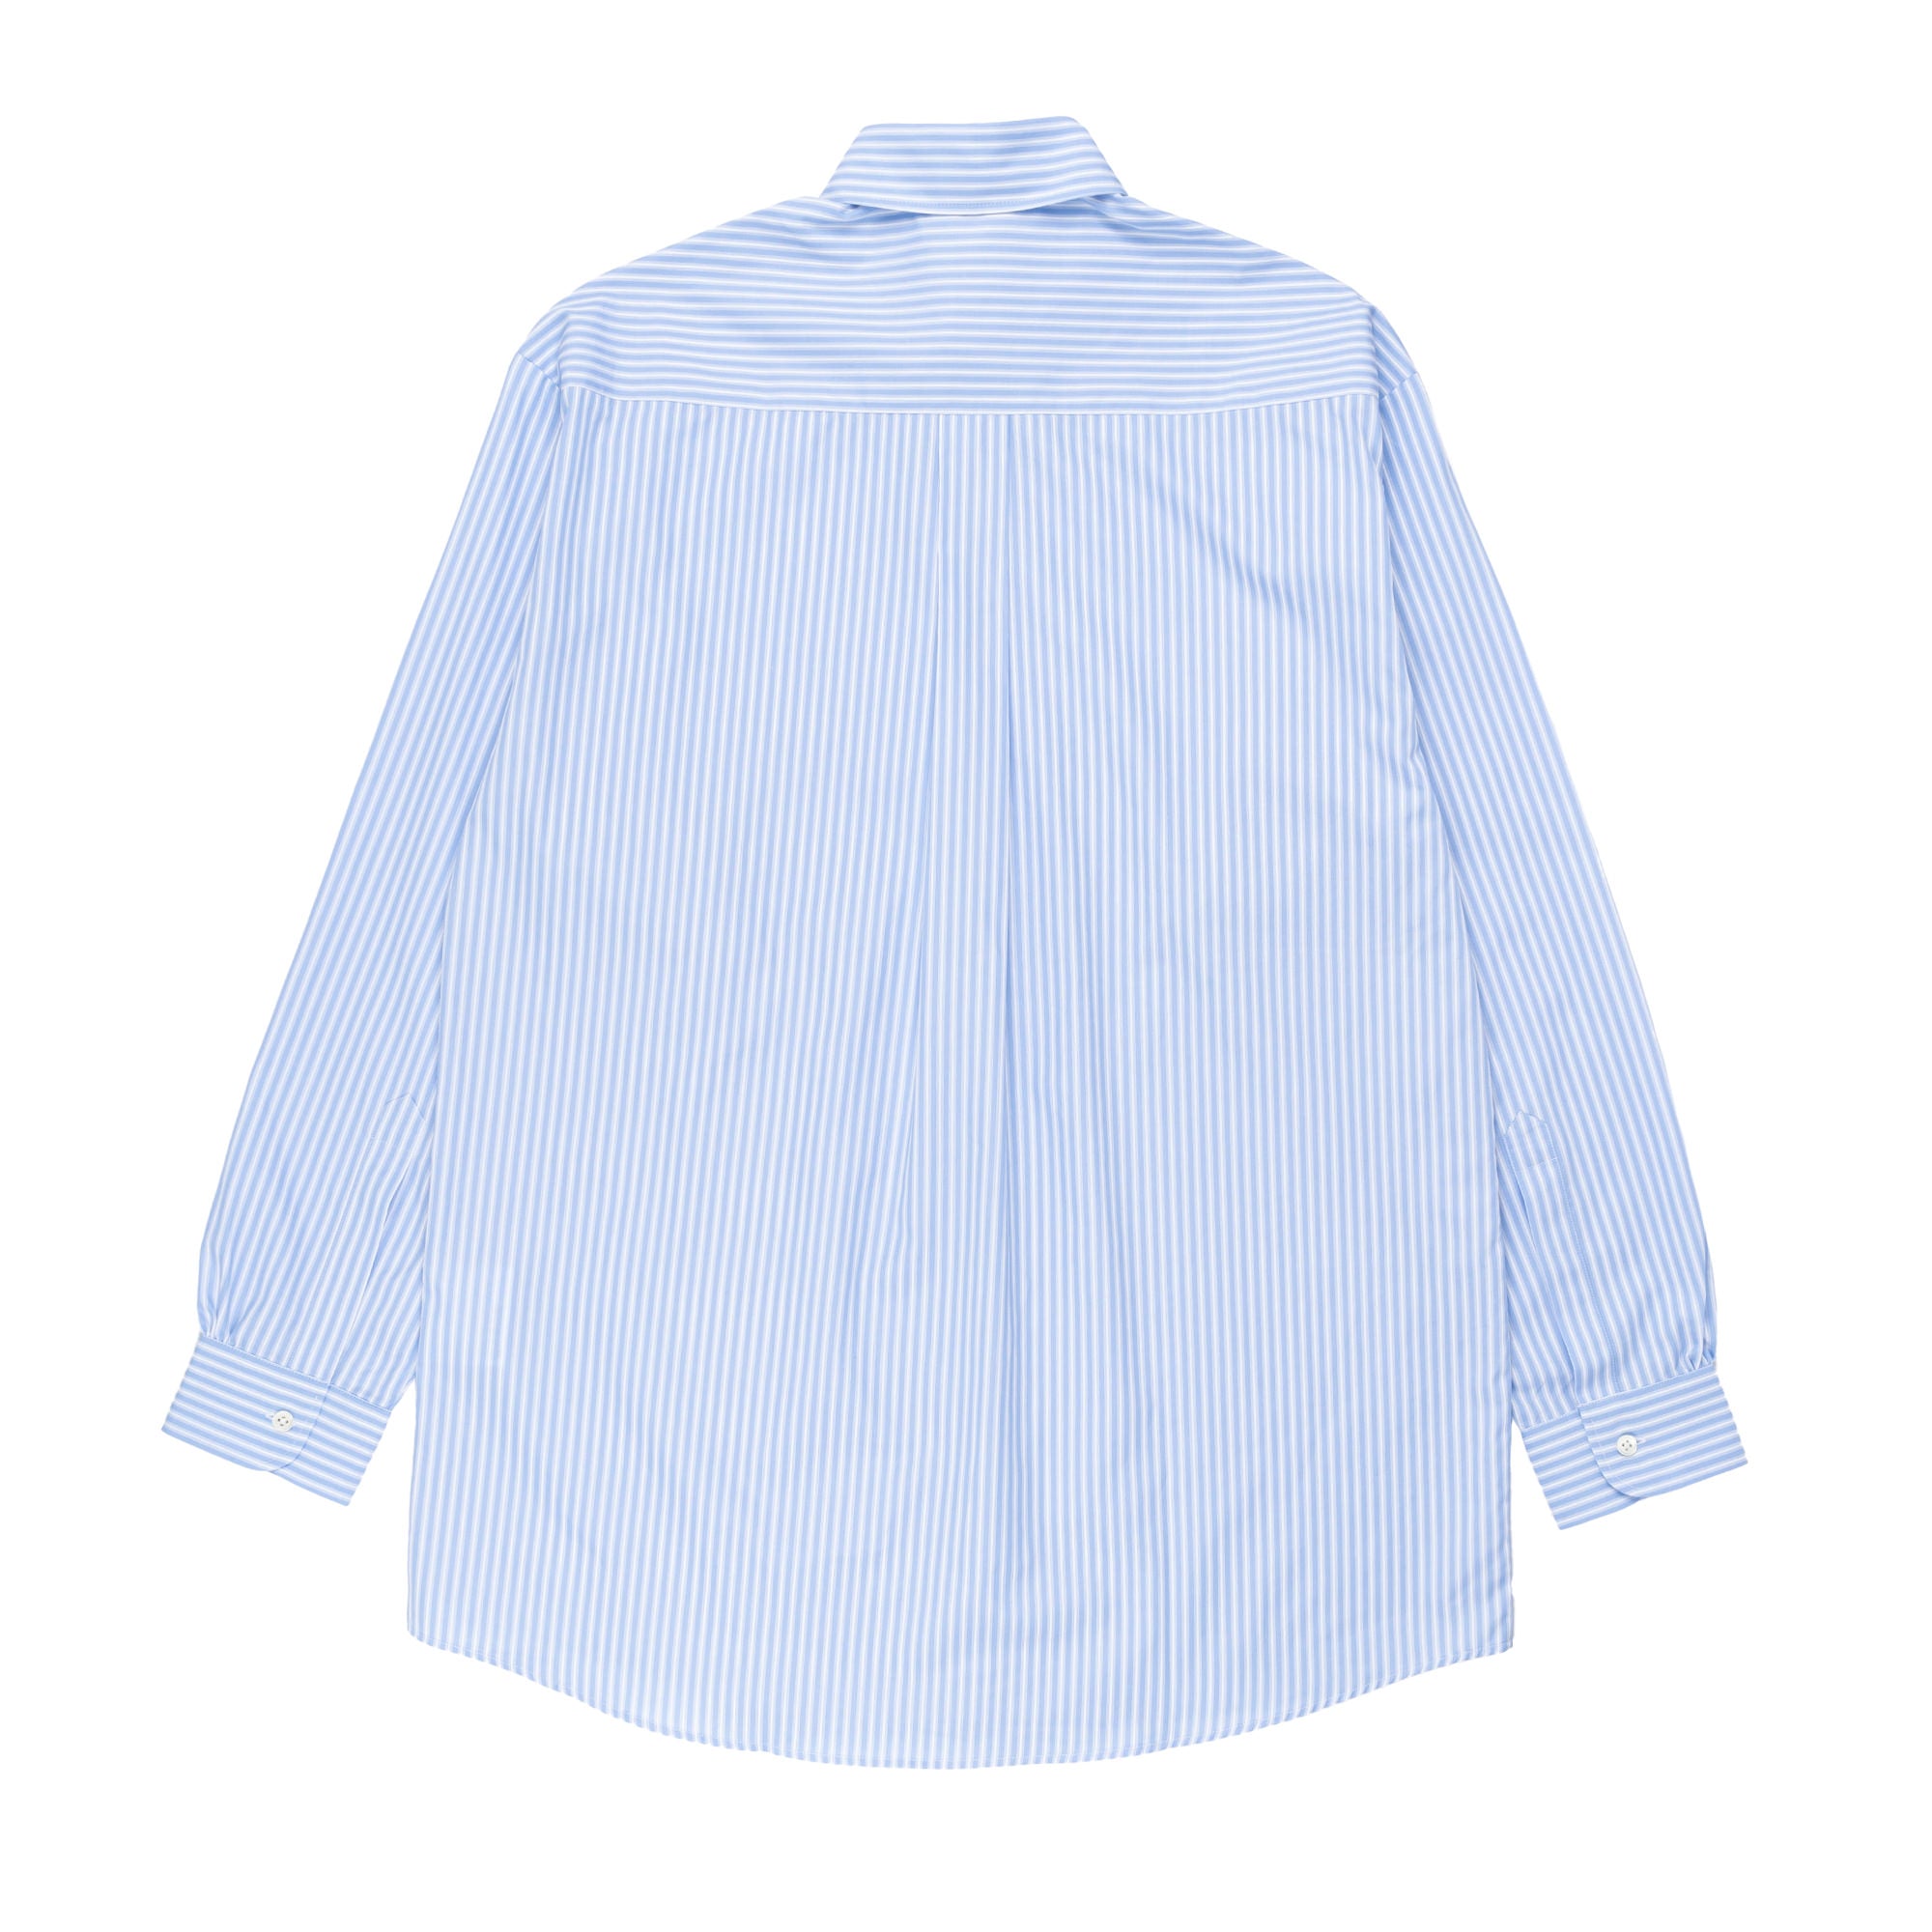 SHFWW x Samira Nasr Shirt Blue Stripe SHF04B301